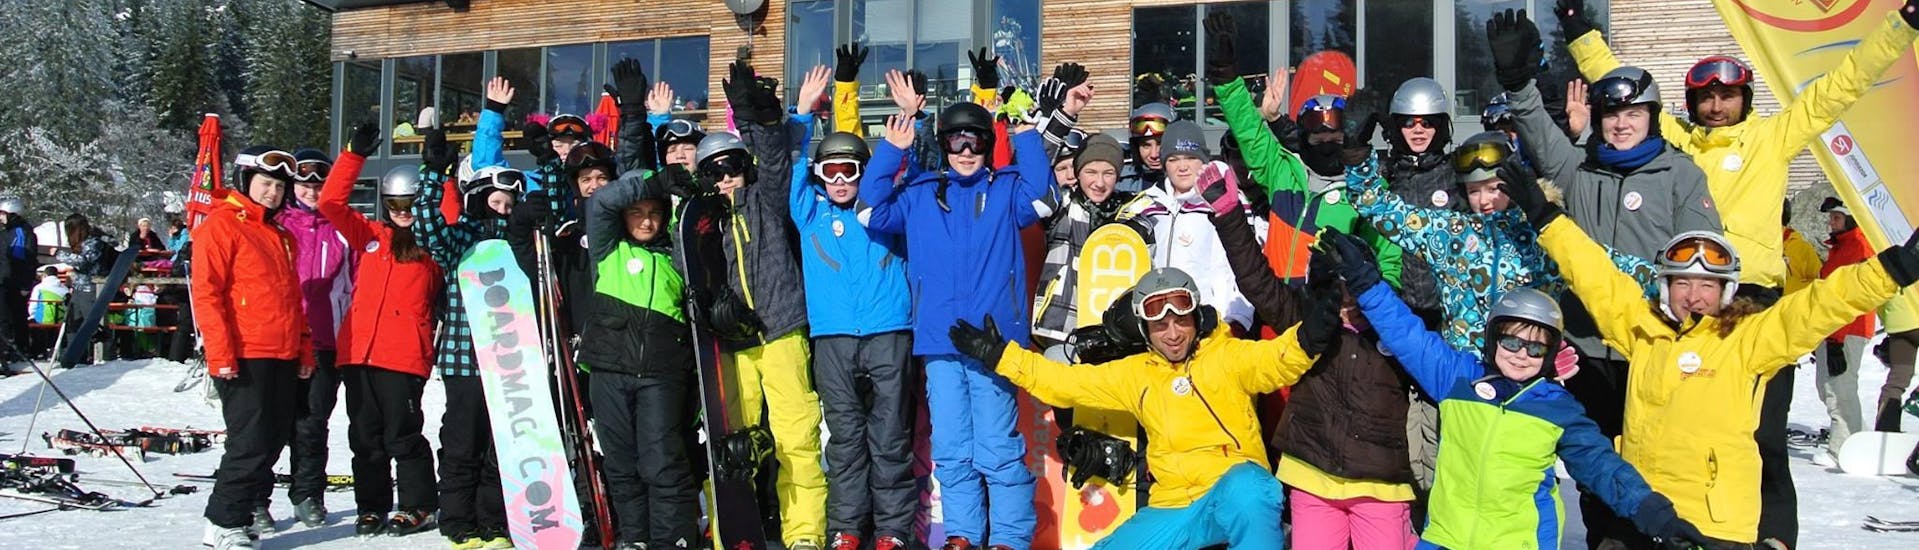 Un grupo de snowboarders pasándoselo bien después de sus clases de snowboard con Schneesportschule ON SNOW Feldberg